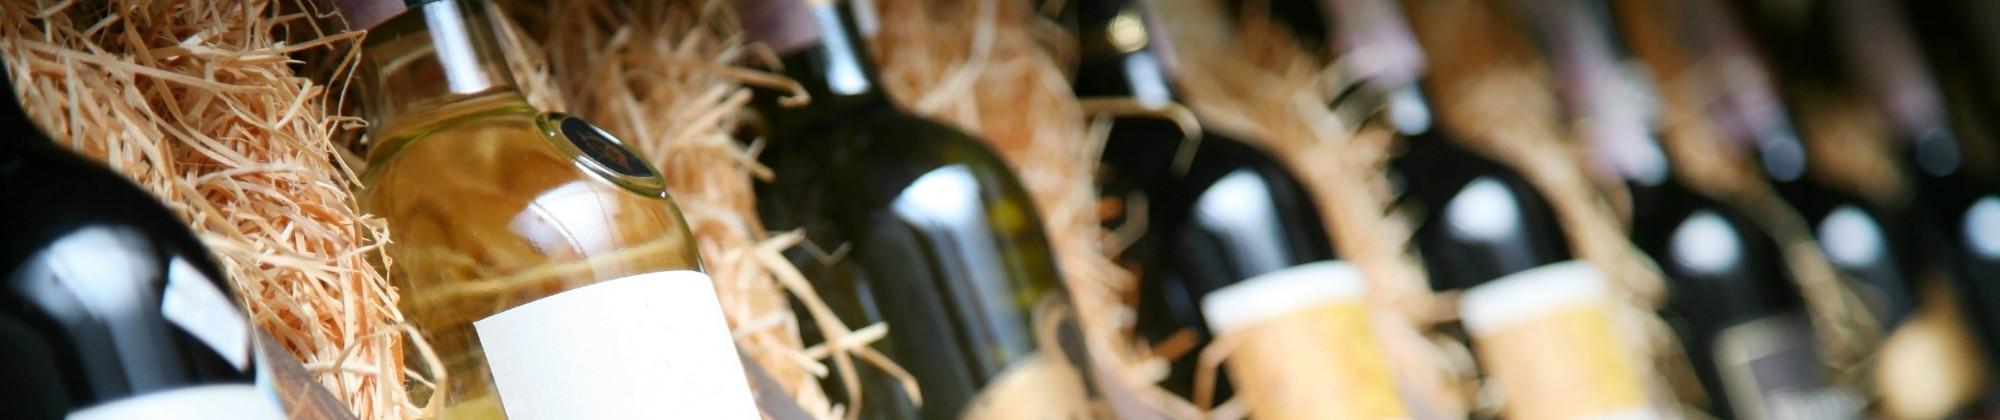 Vini Salentini: i vini più conosciuti del Salento